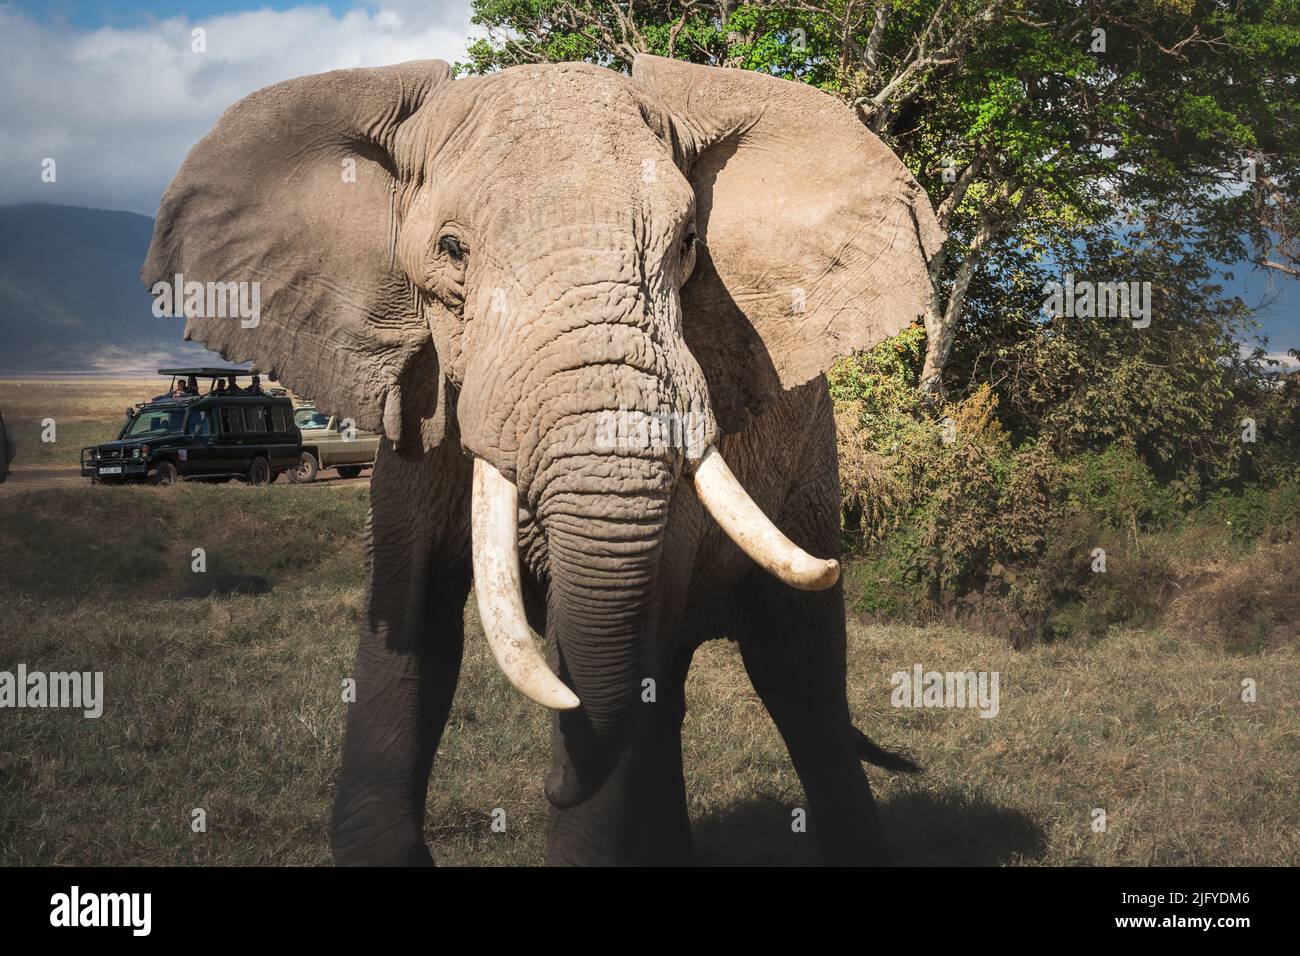 Elefante macho adulto grande aislado (Elephantidae) y jeeps de safari de fauna silvestre en la zona de conservación de pastizales del cráter Ngorongoro. Tanzania. África Foto de stock